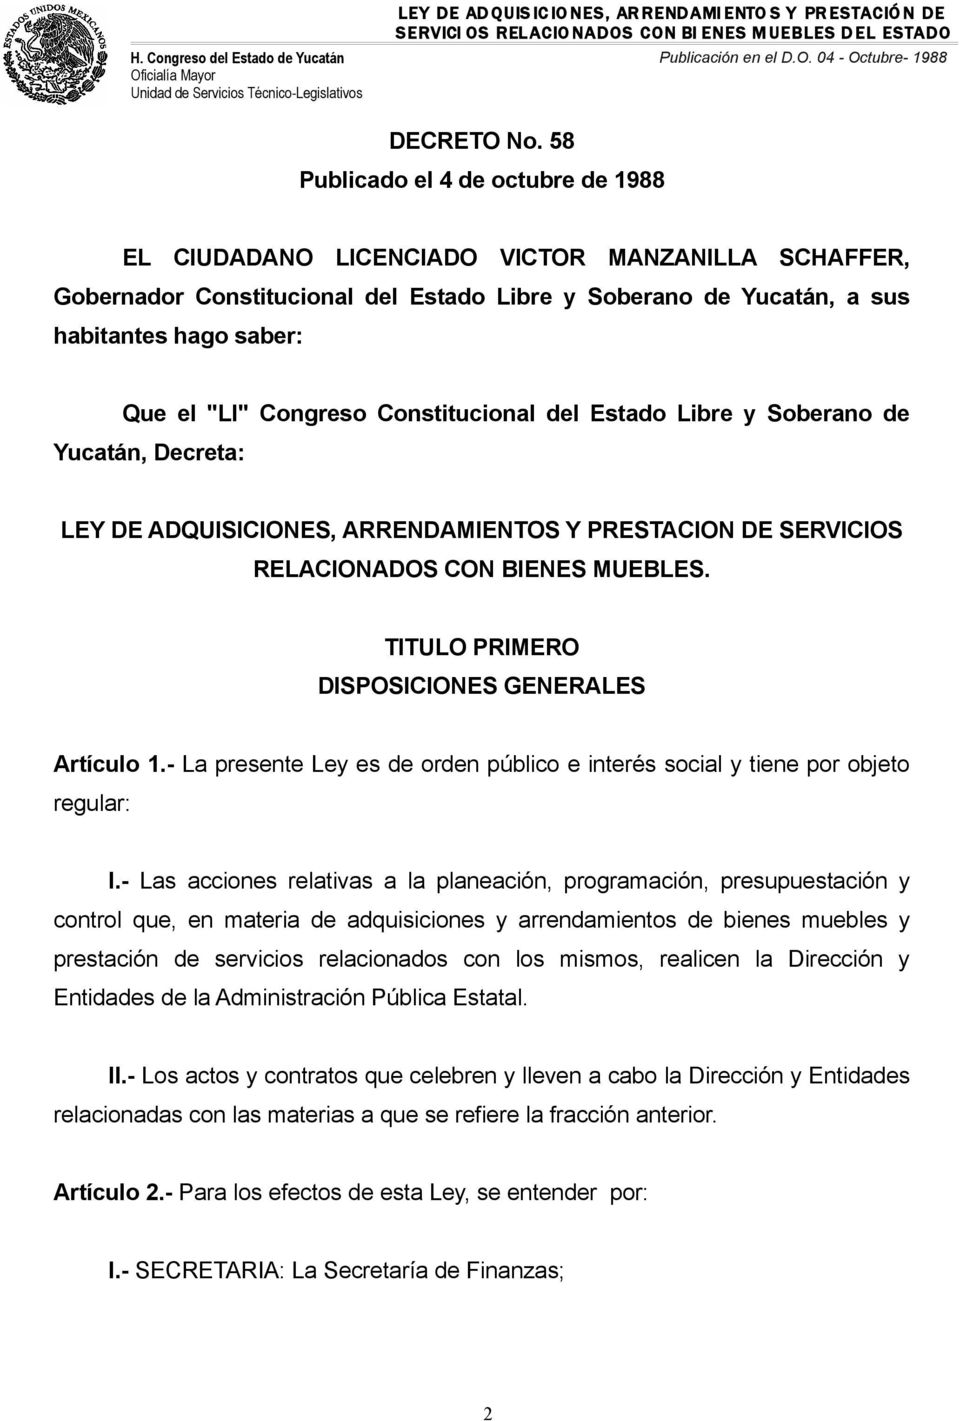 Congreso Constitucional del Estado Libre y Soberano de Yucatán, Decreta: LEY DE ADQUISICIONES, ARRENDAMIENTOS Y PRESTACION DE SERVICIOS RELACIONADOS CON BIENES MUEBLES.